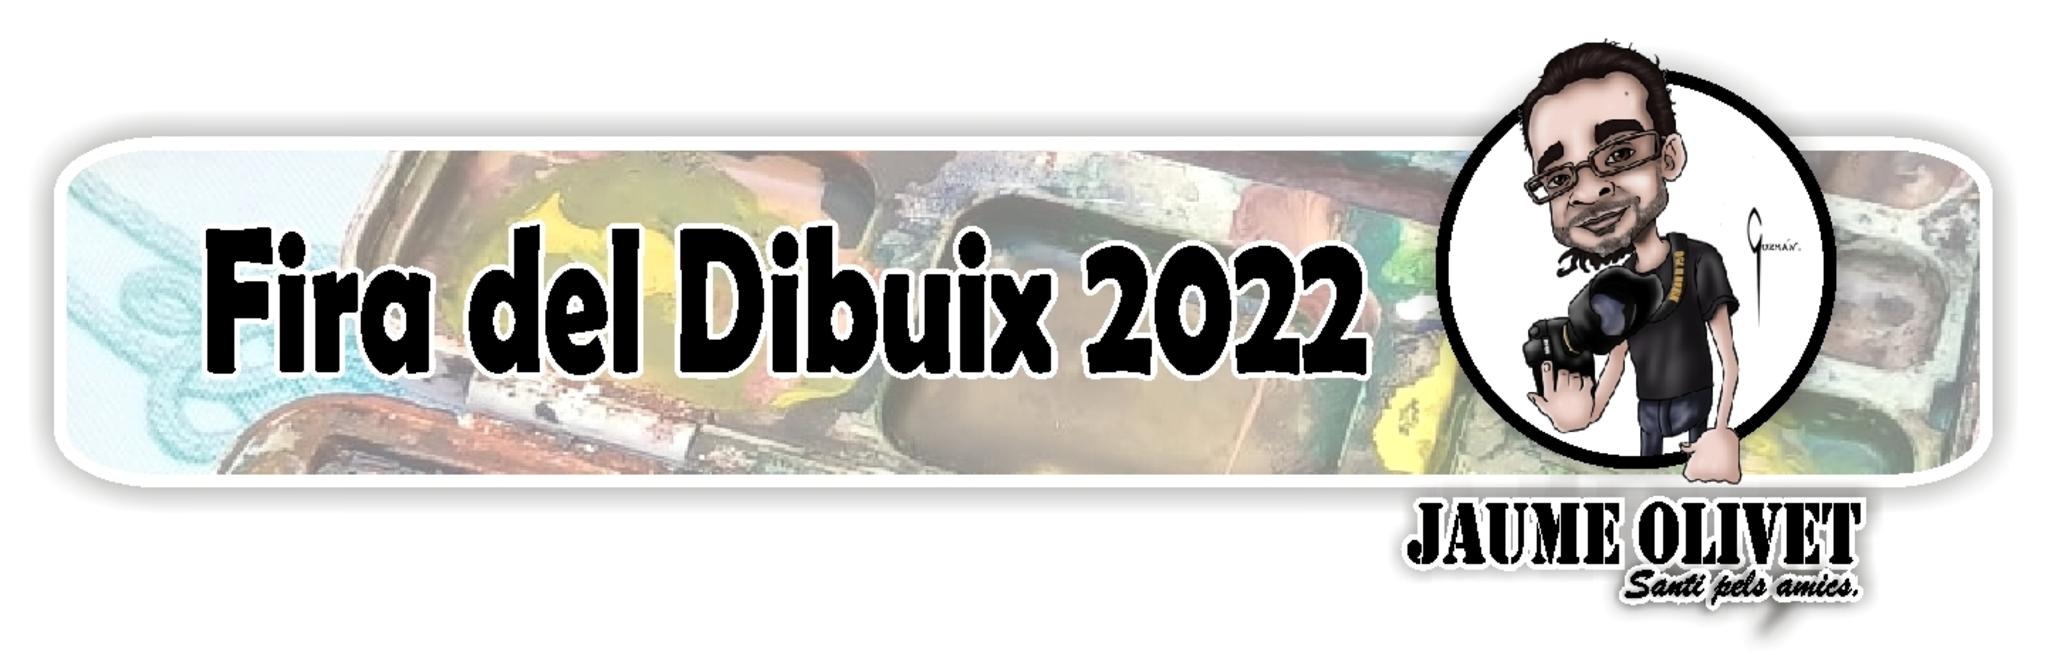  Fira del Dibuix 2022